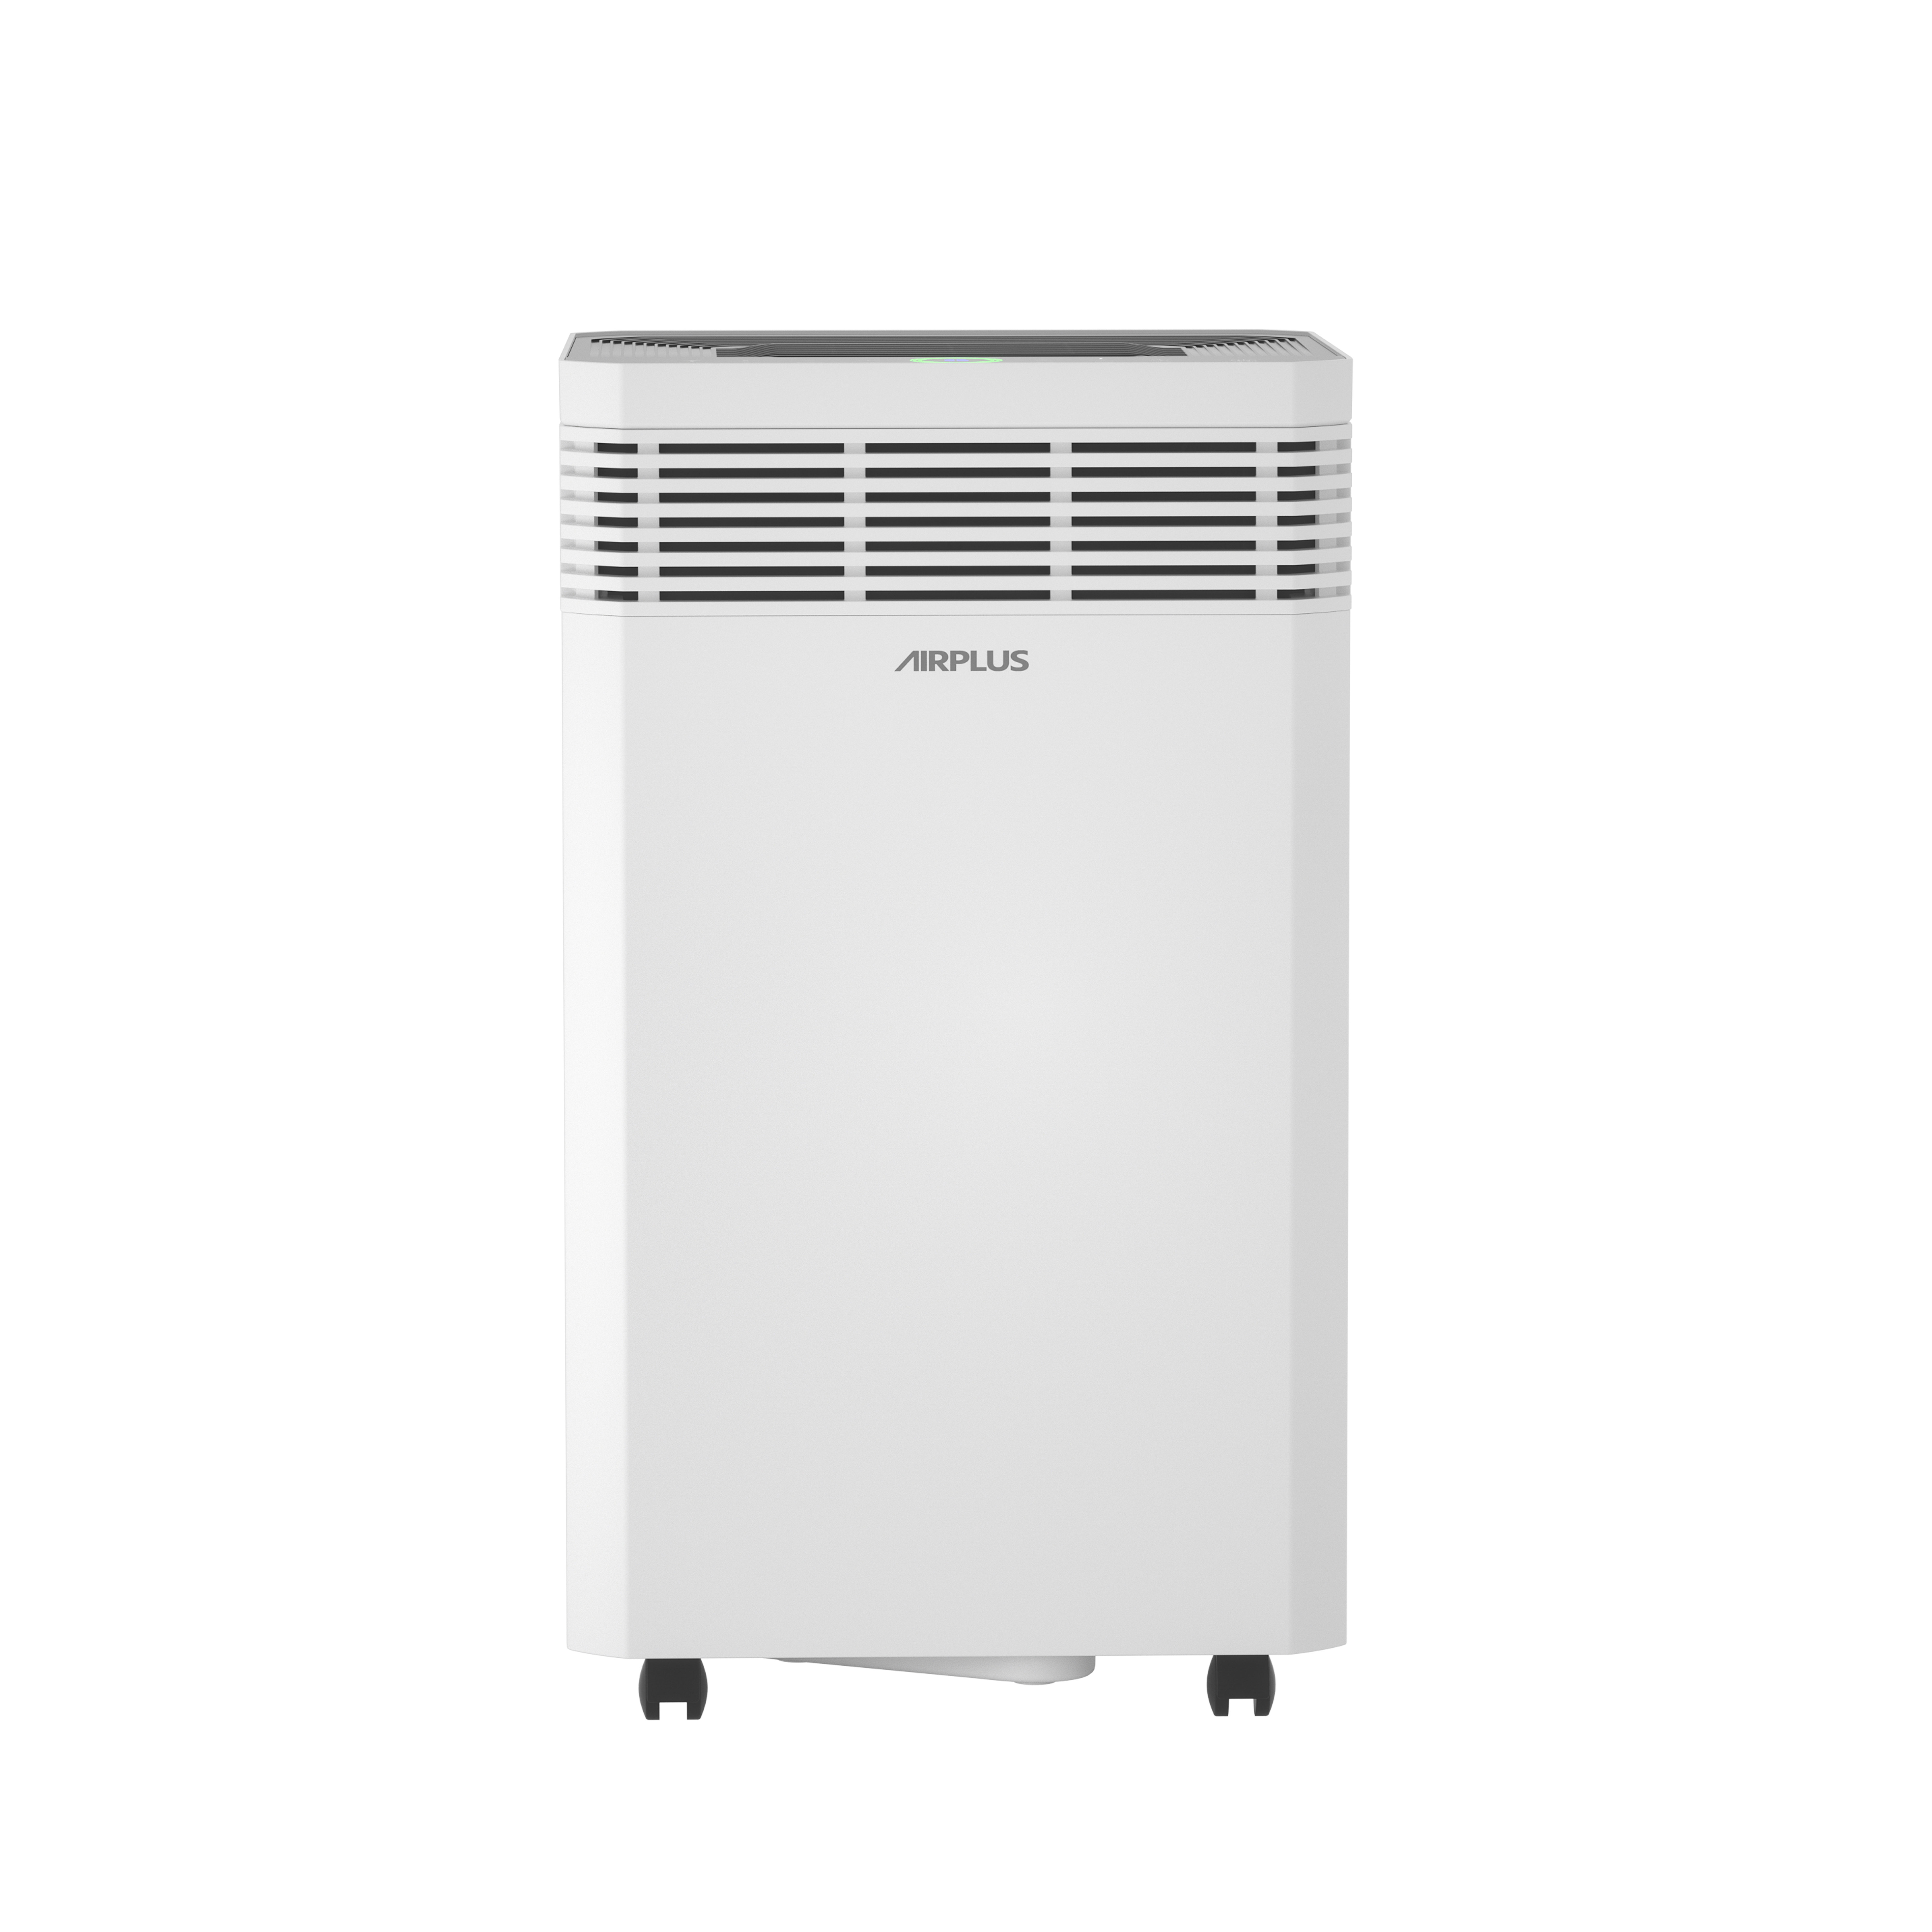 产品中心-空气消毒净化机-衣物护理机-冰箱消毒器-AIRPLUS艾普莱斯官网